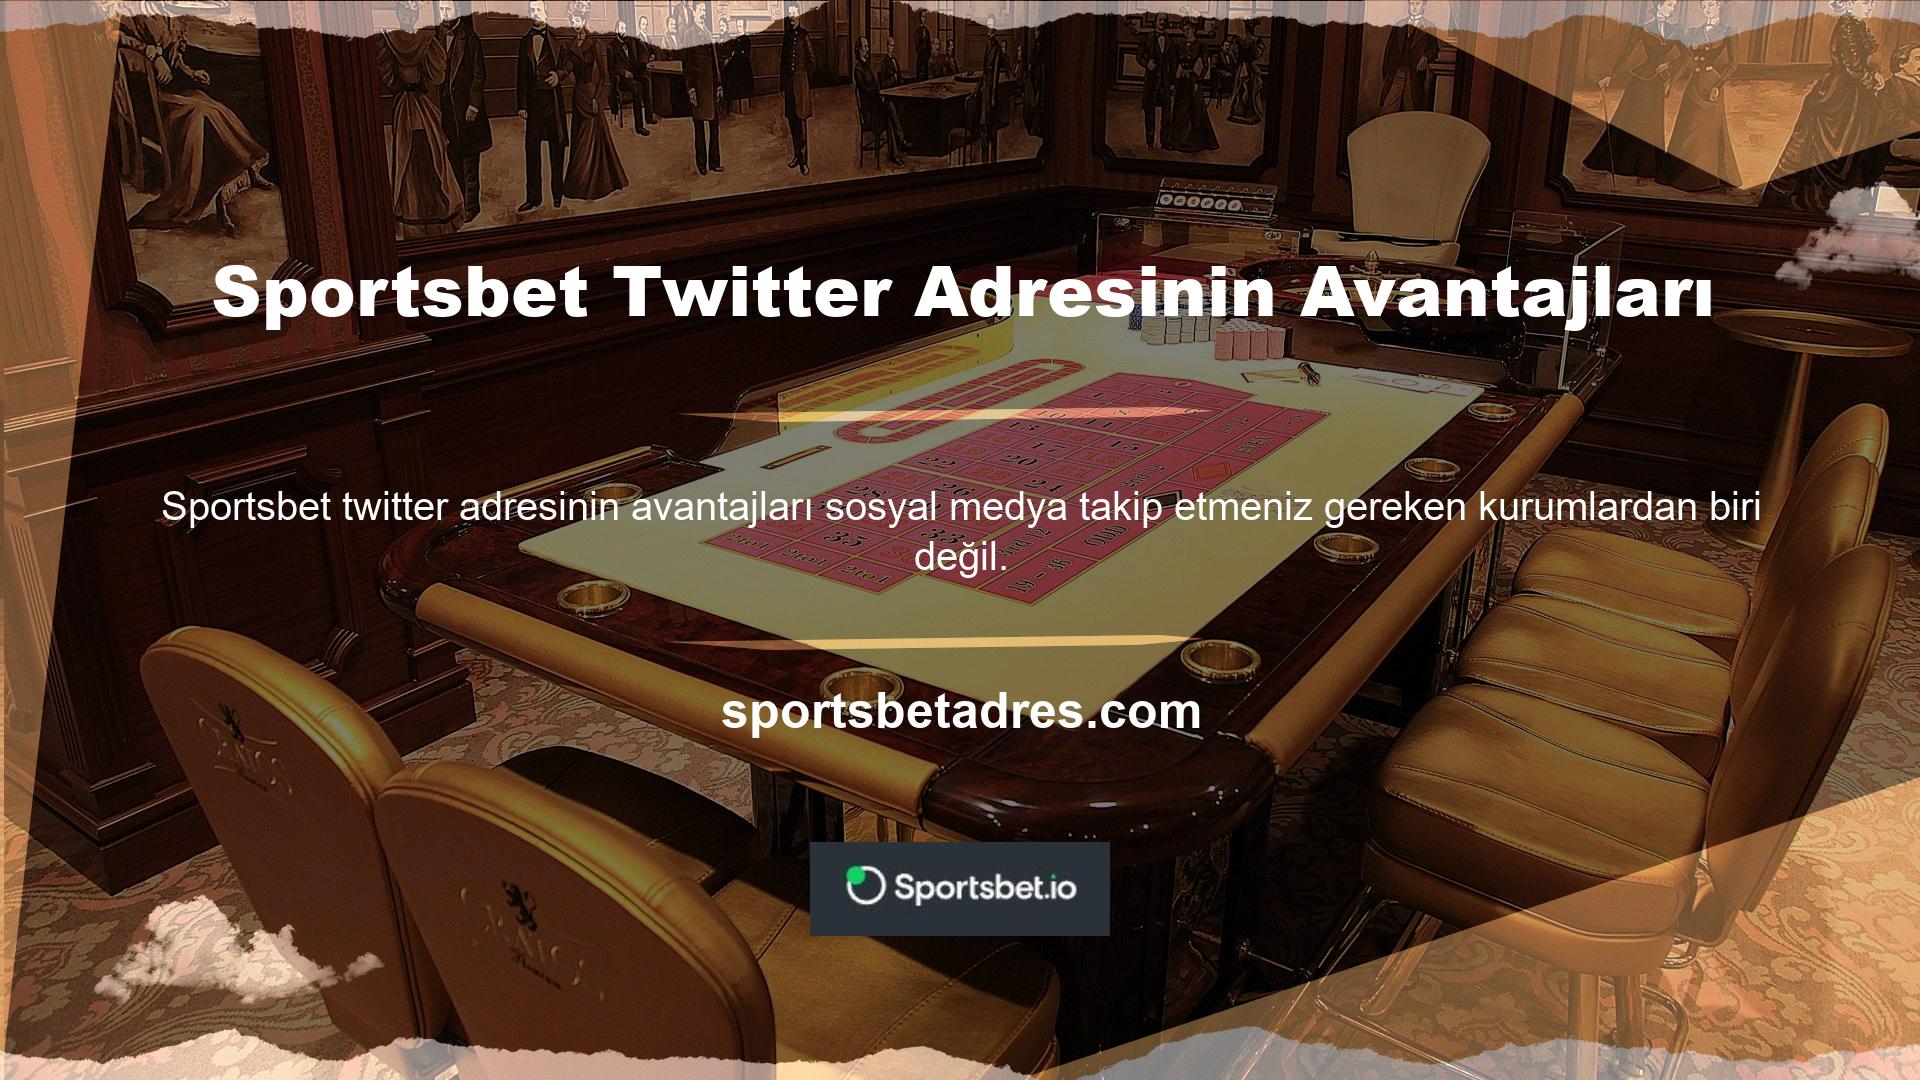 Ancak resmî Sportsbet Twitter hesabını takip ederseniz otomatik olarak belirli avantajlardan yararlanacaksınız